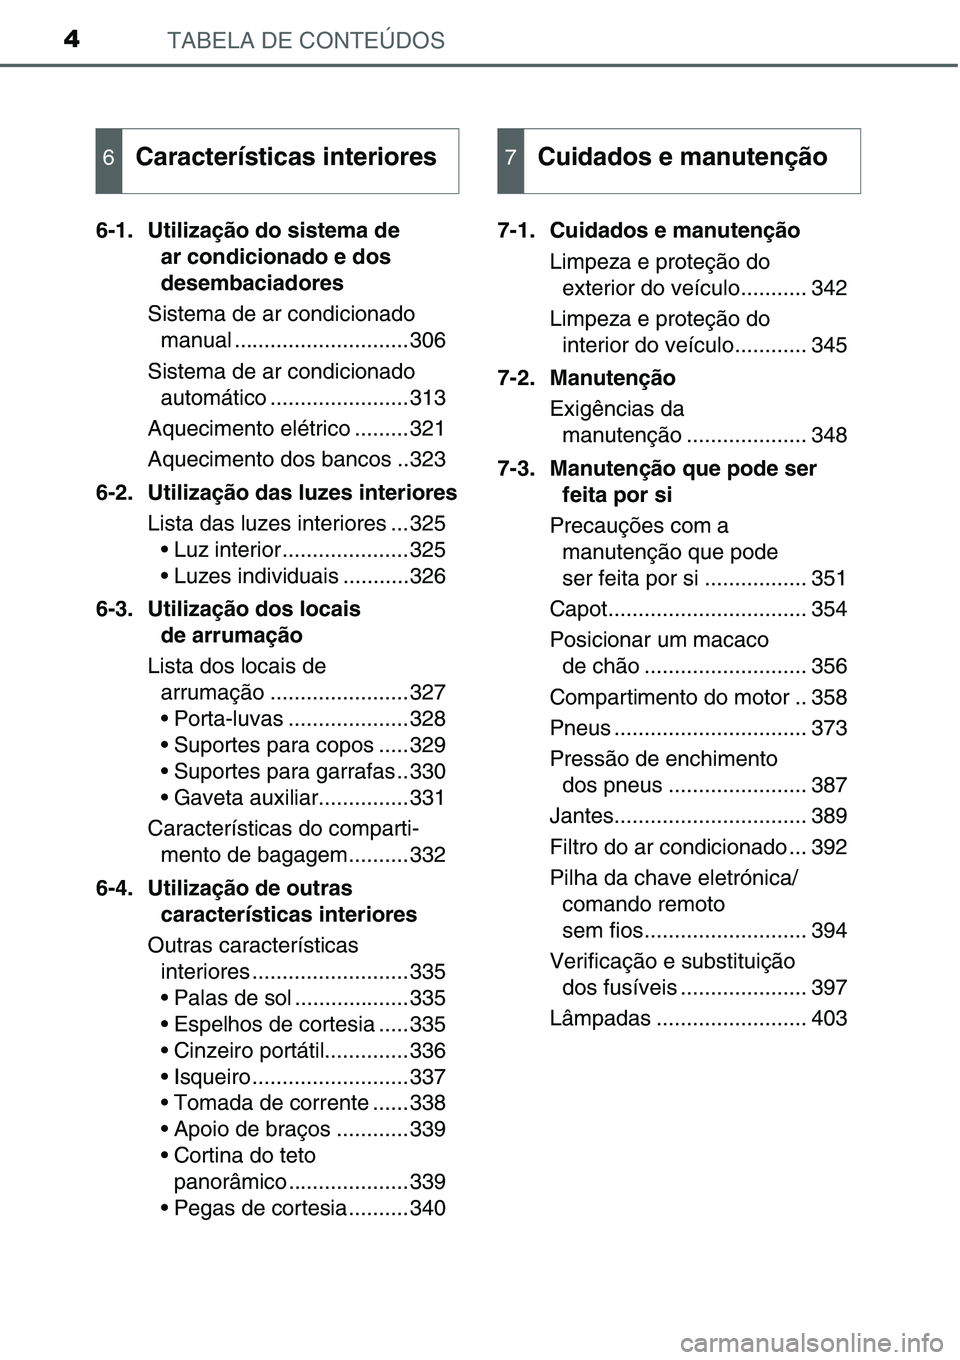 TOYOTA YARIS HATCHBACK 2015  Manual de utilização (in Portuguese) TABELA DE CONTEÚDOS4
6-1. Utilização do sistema de 
ar condicionado e dos 
desembaciadores
Sistema de ar condicionado 
manual .............................306
Sistema de ar condicionado 
automátic